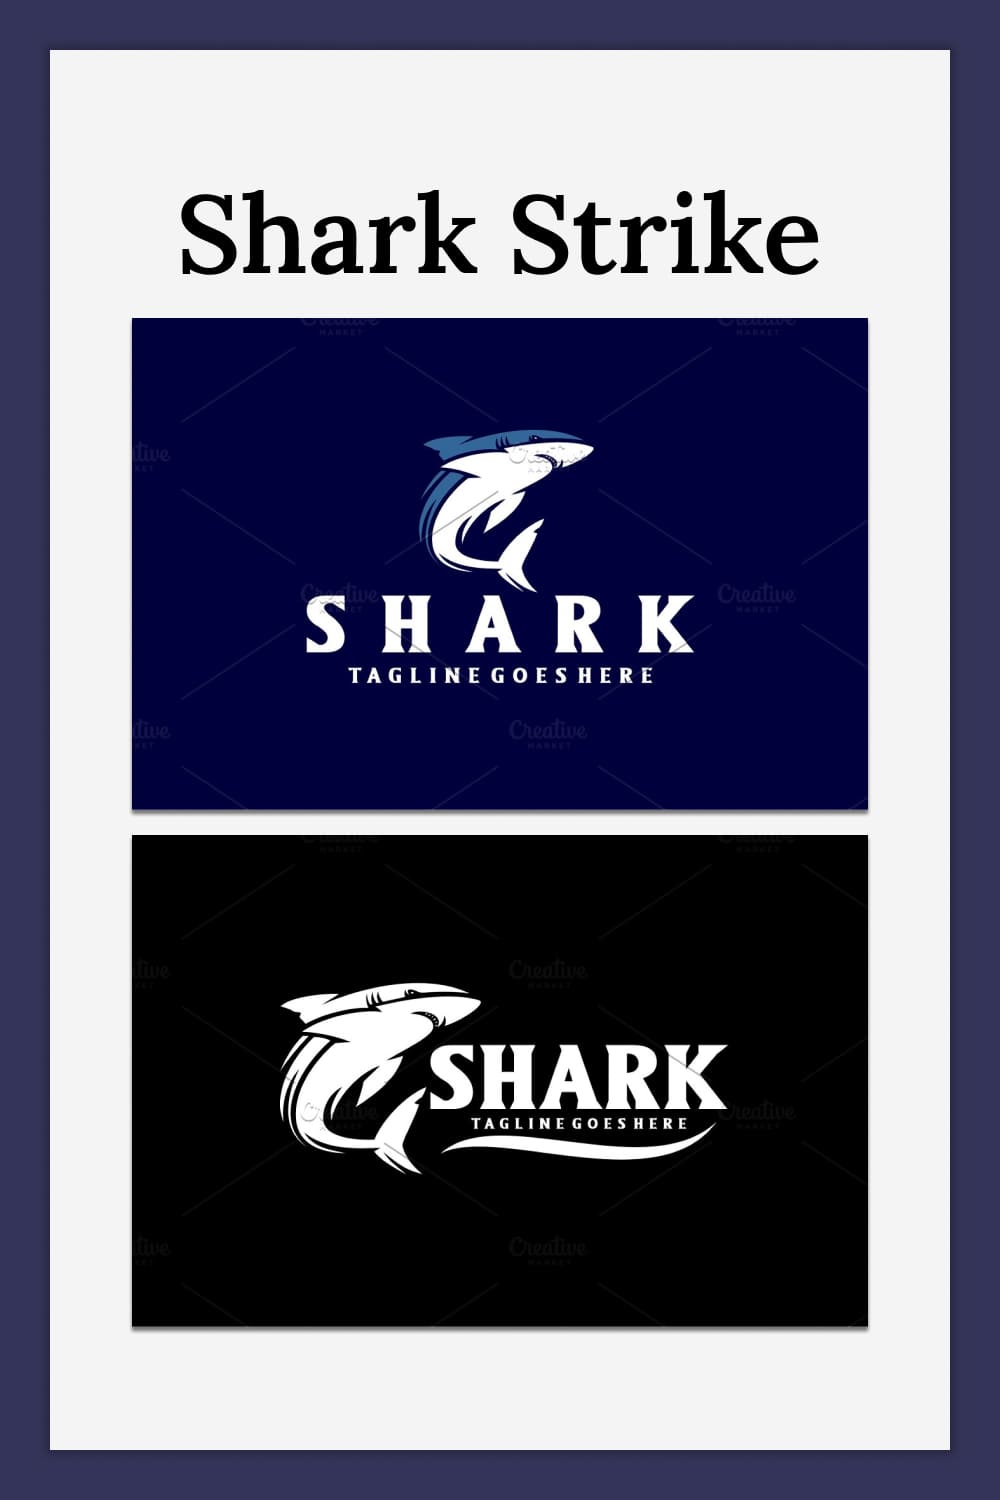 Shark strike - pinterest image preview.